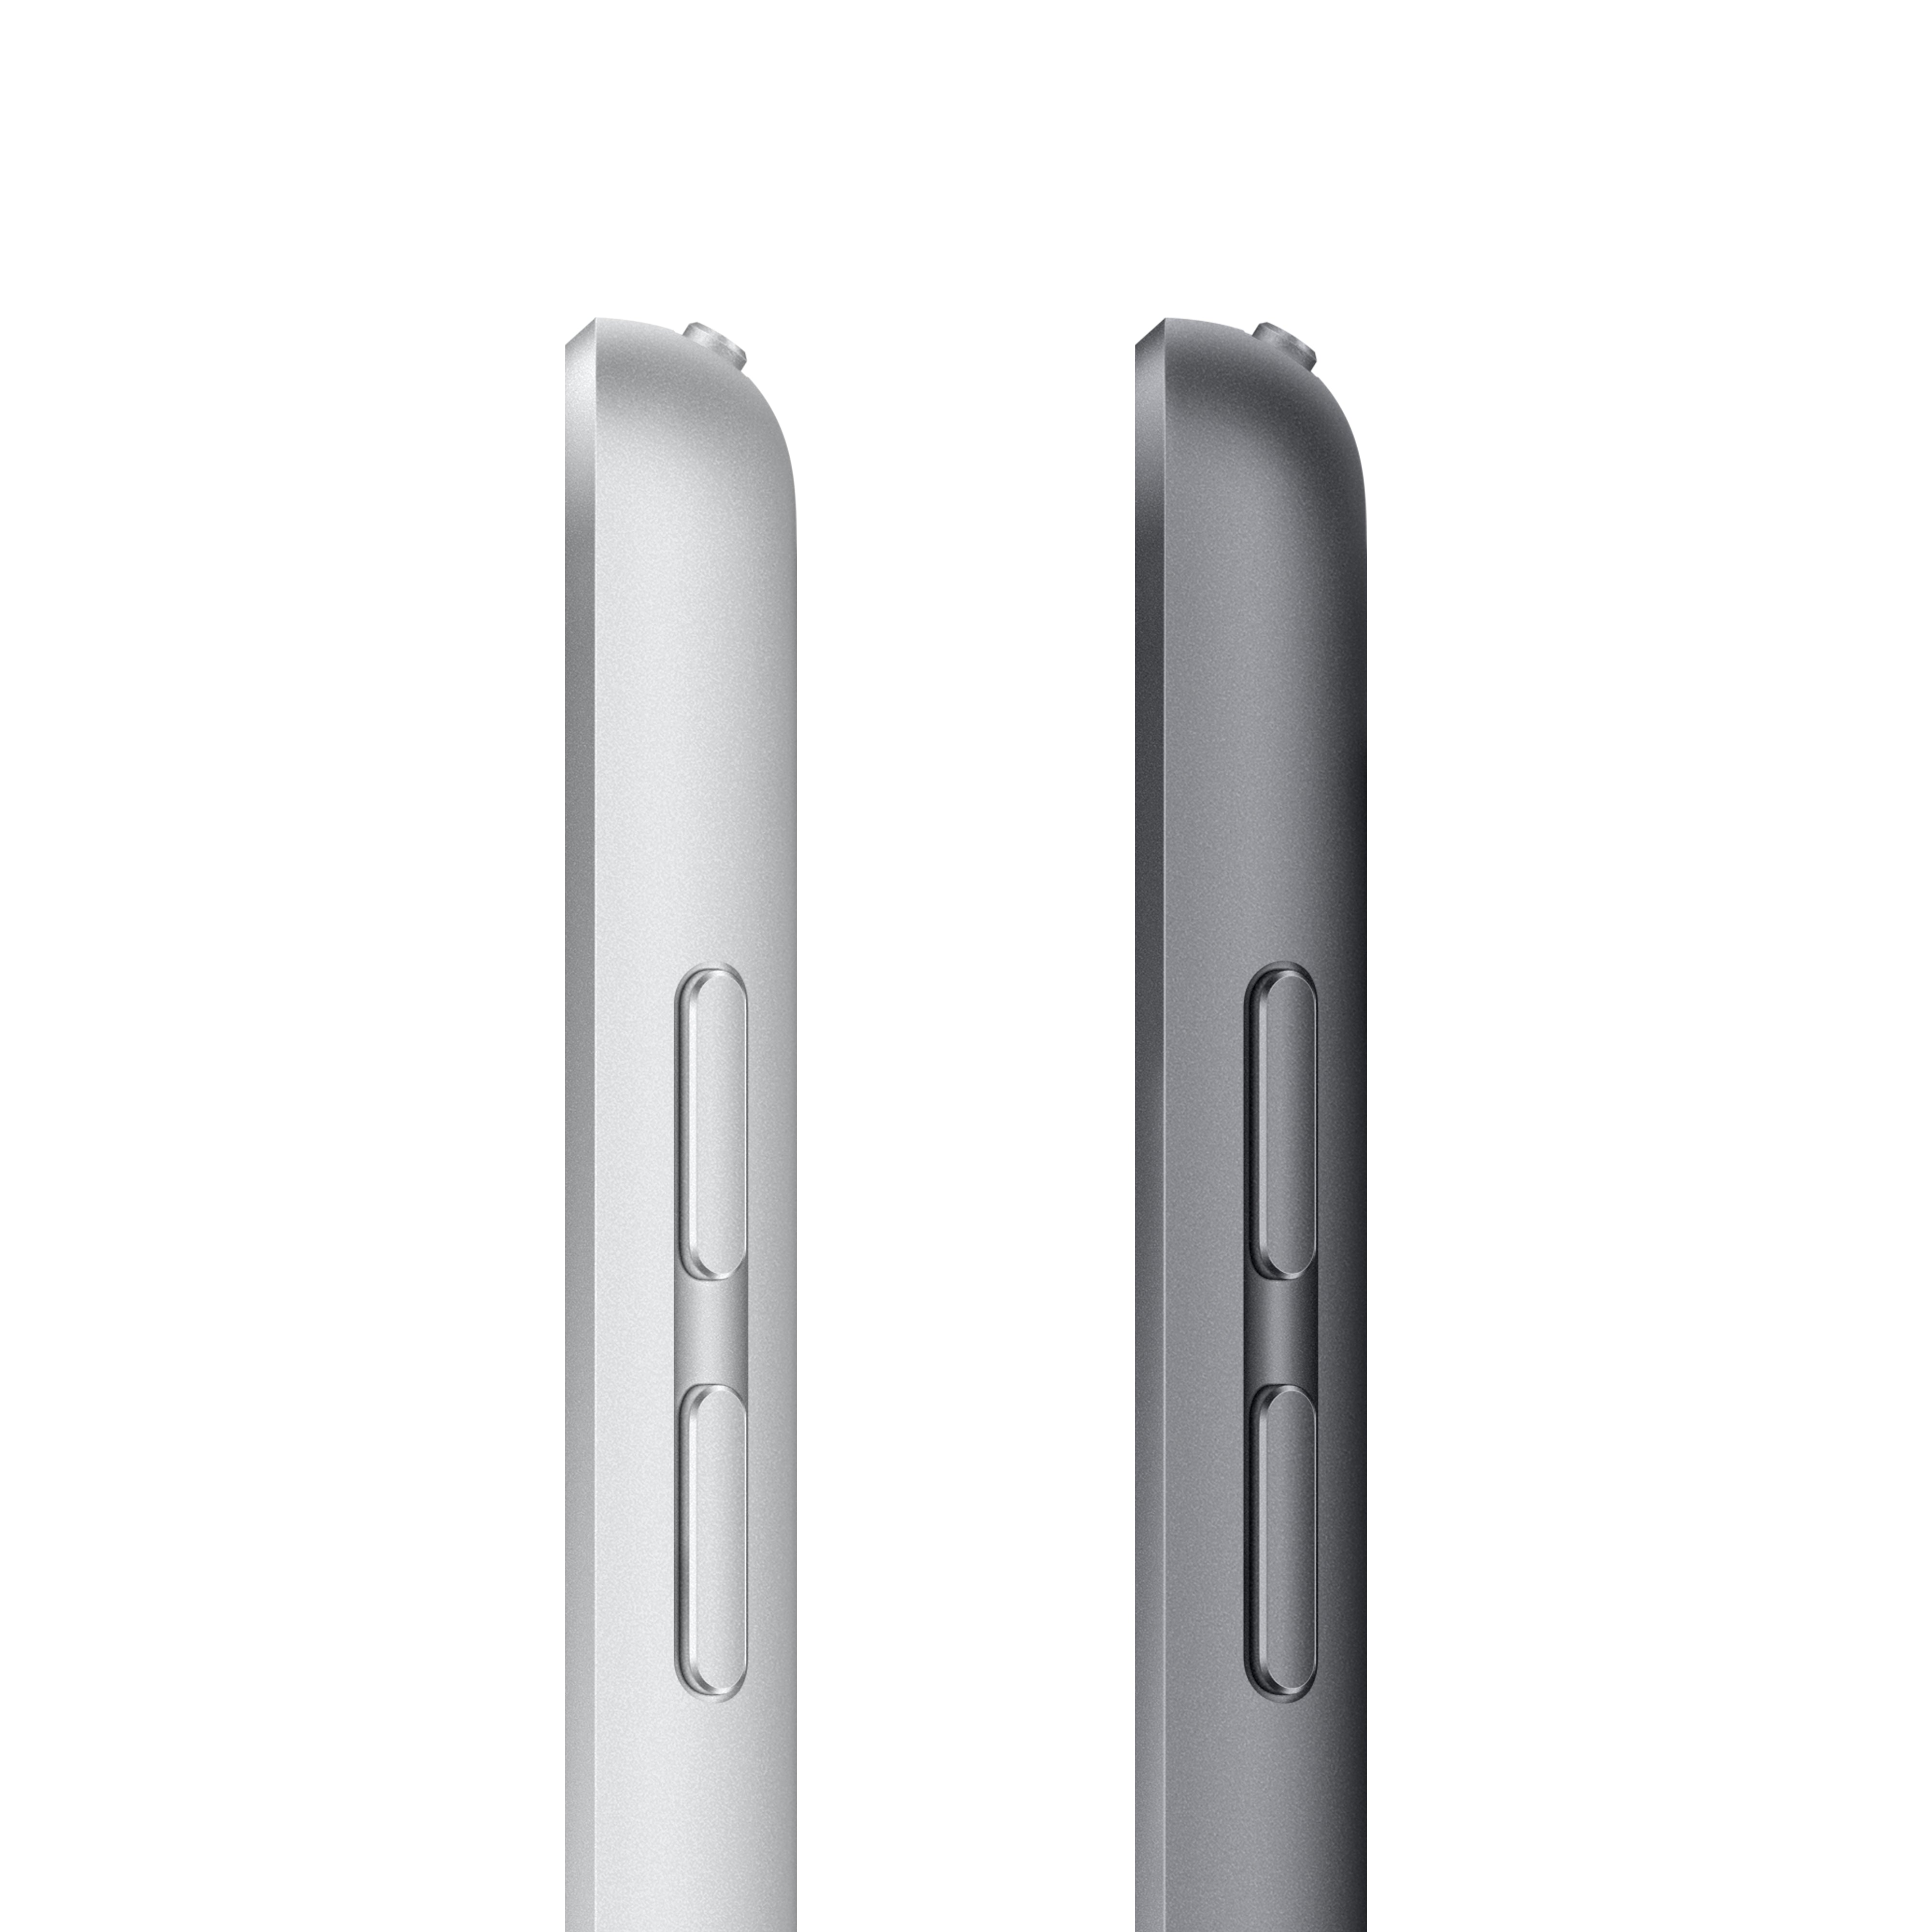 iPad 9th Gen 10.2-inch Wi-Fi + Cellular 256GB - Silver